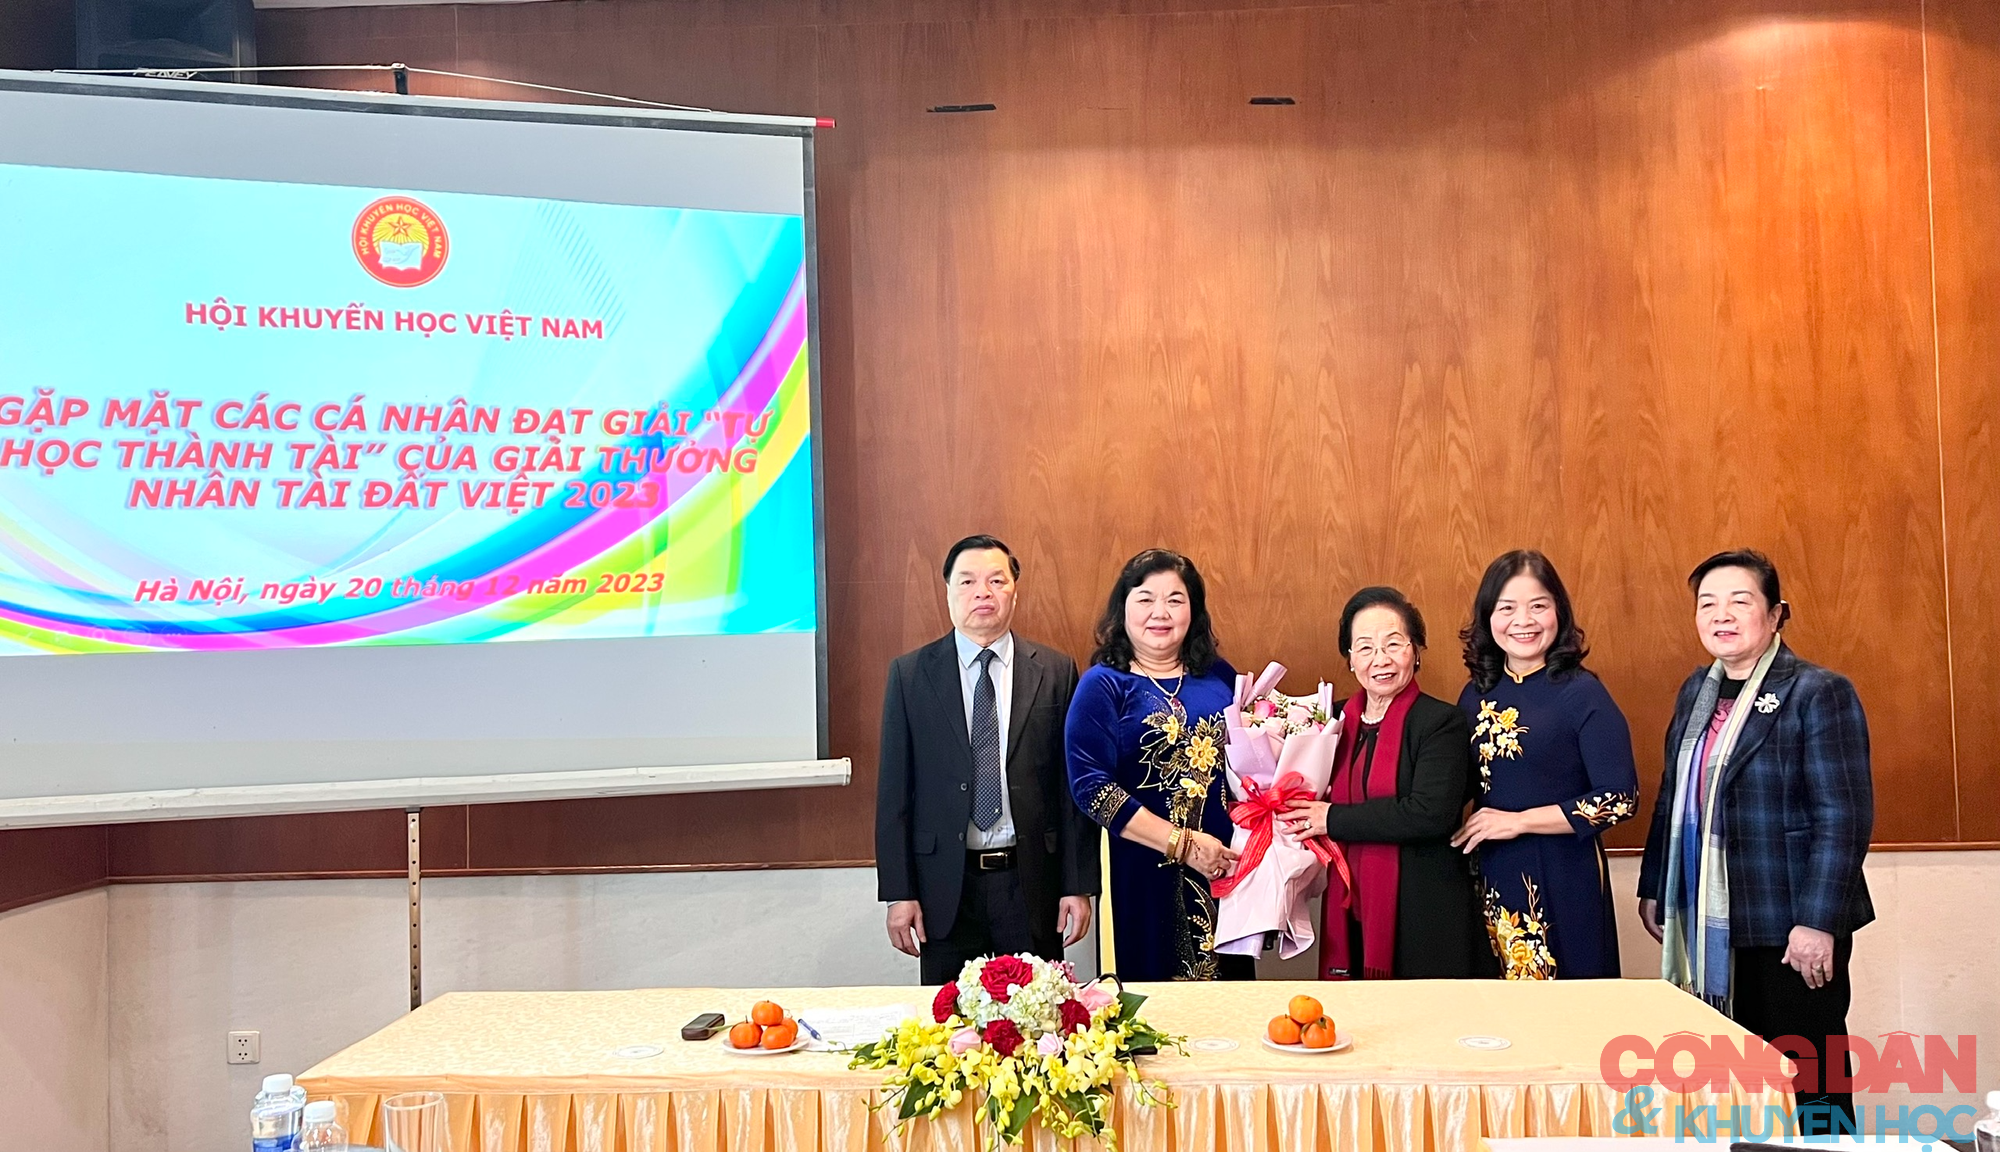 Gặp mặt các cá nhân đạt giải Tự học thành tài của Giải thưởng Nhân tài Đất Việt 2023- Ảnh 7.